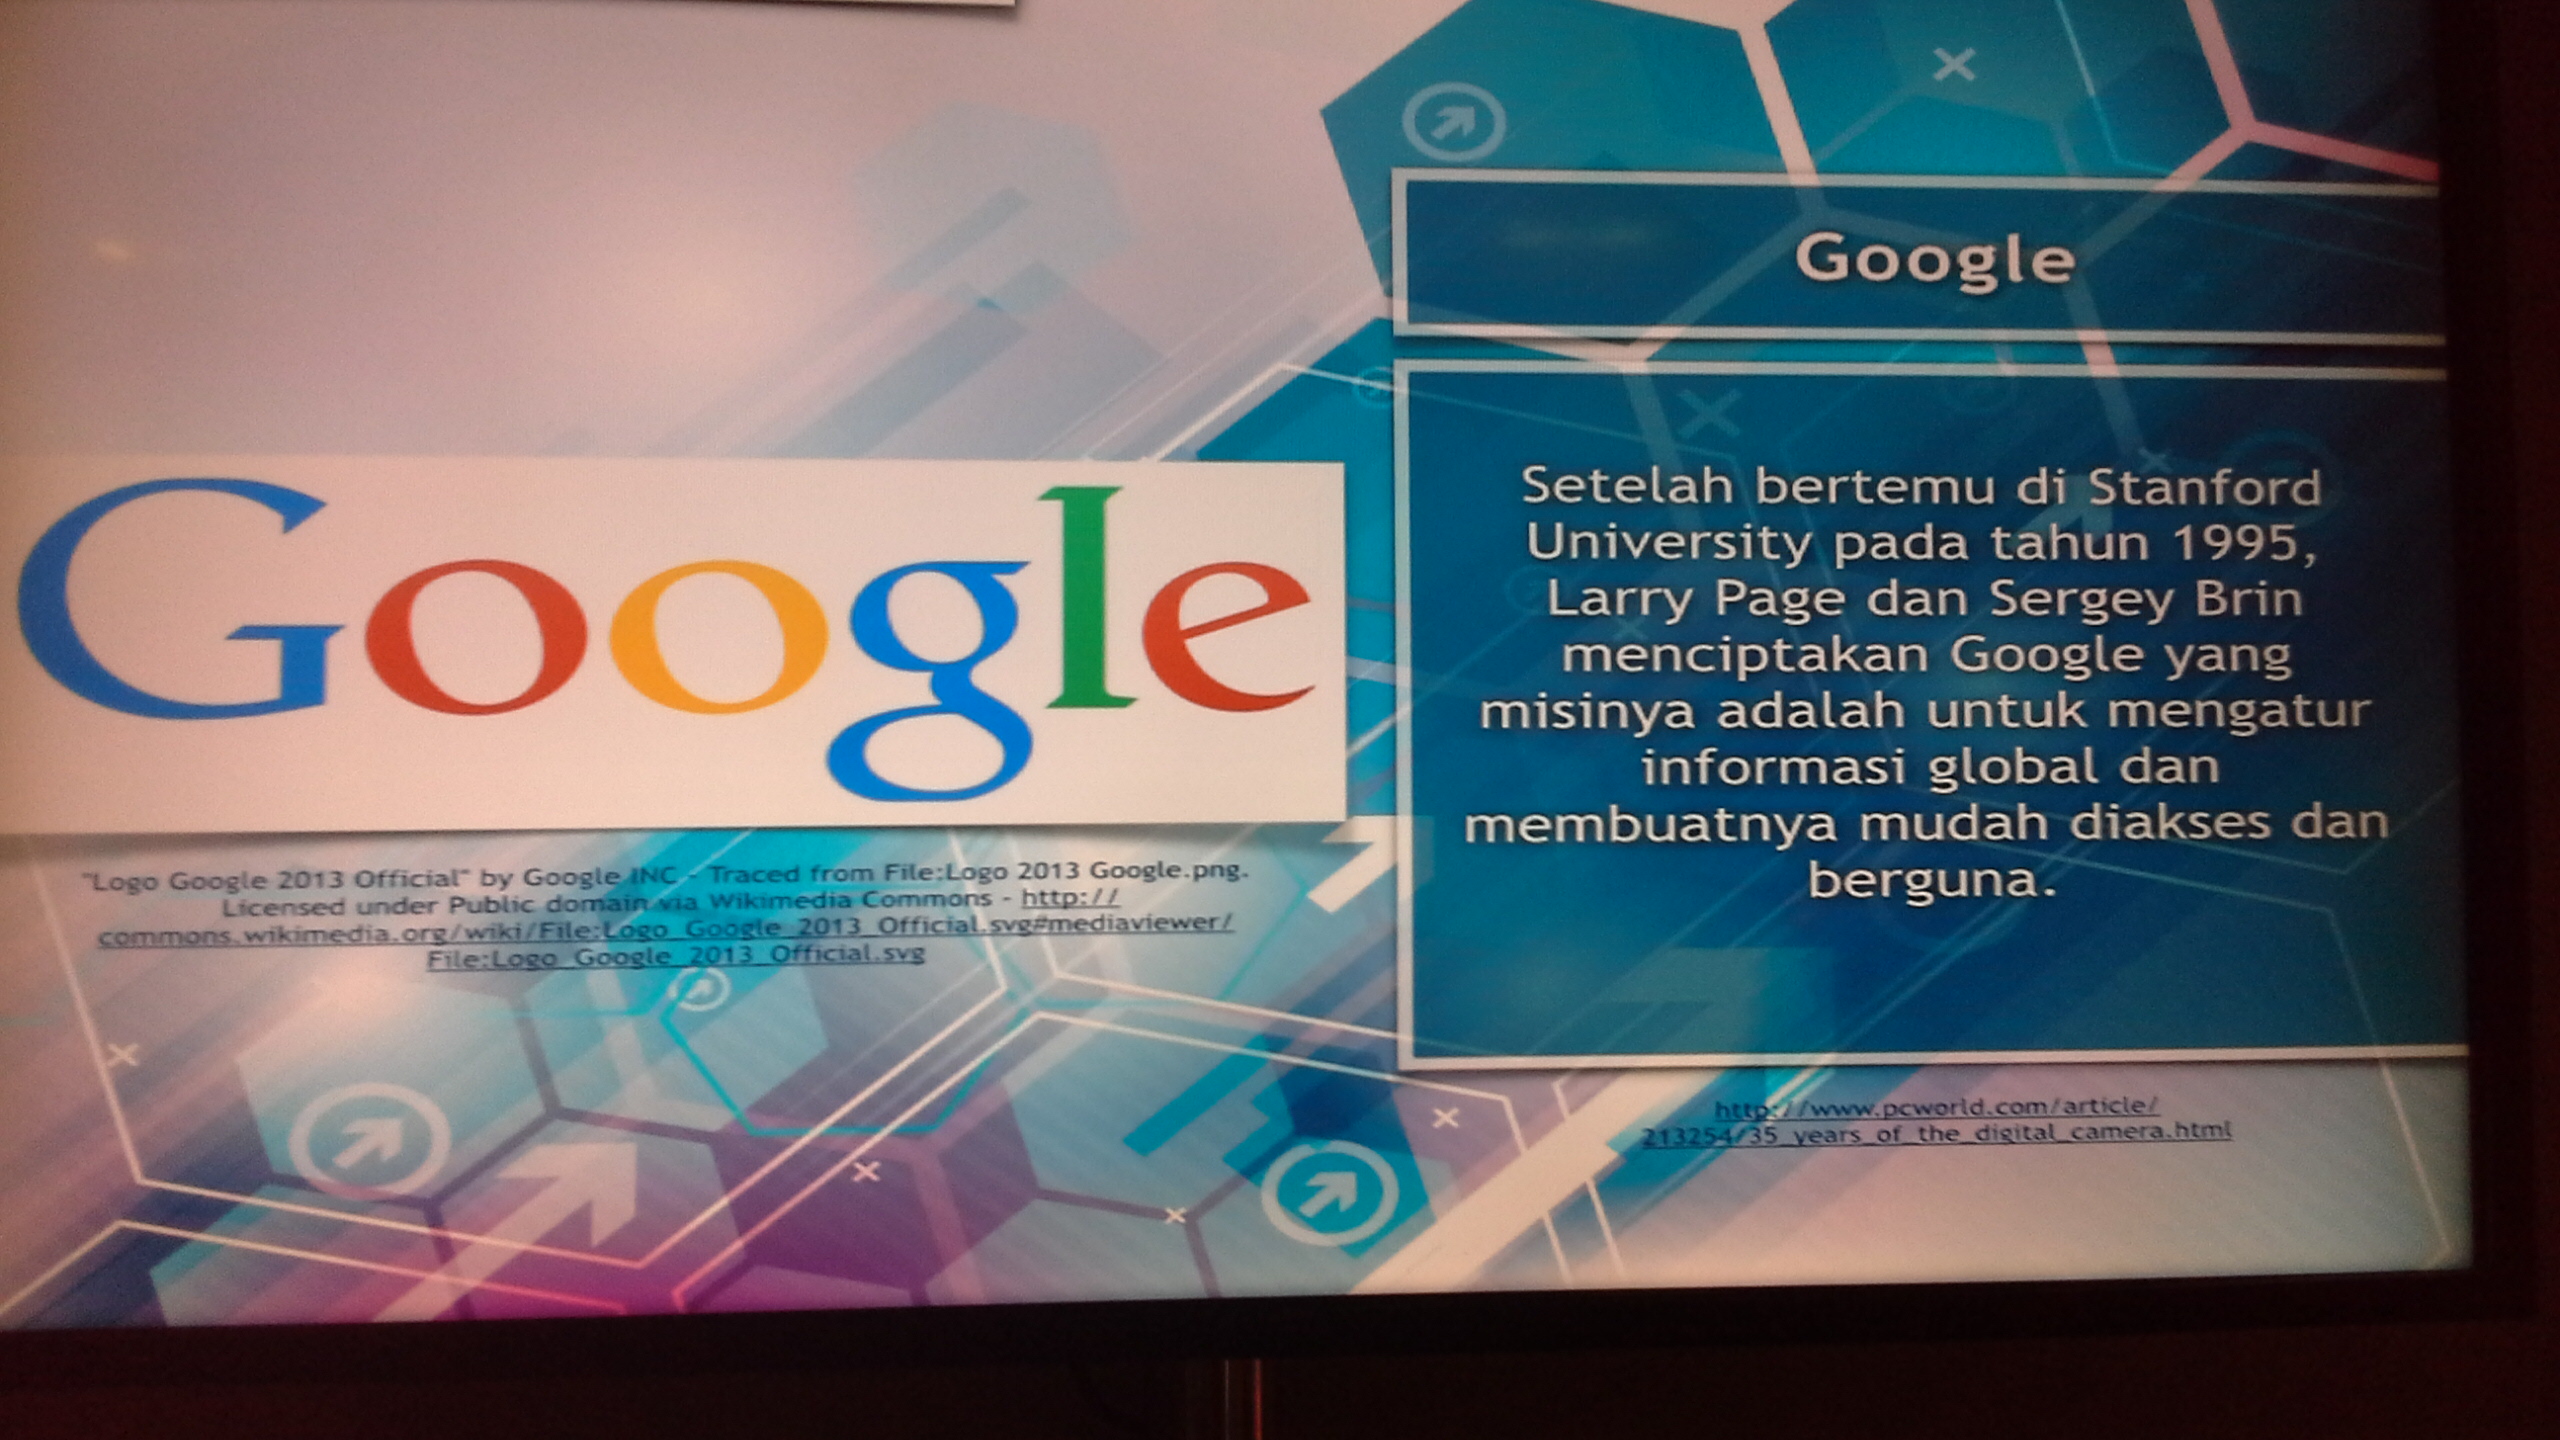 Setelah bertemu di Standford University pada tahun 1995 Larry Page dan Sergey Brin menciptakan Google yang misinya adalah untuk mengatur informasi global